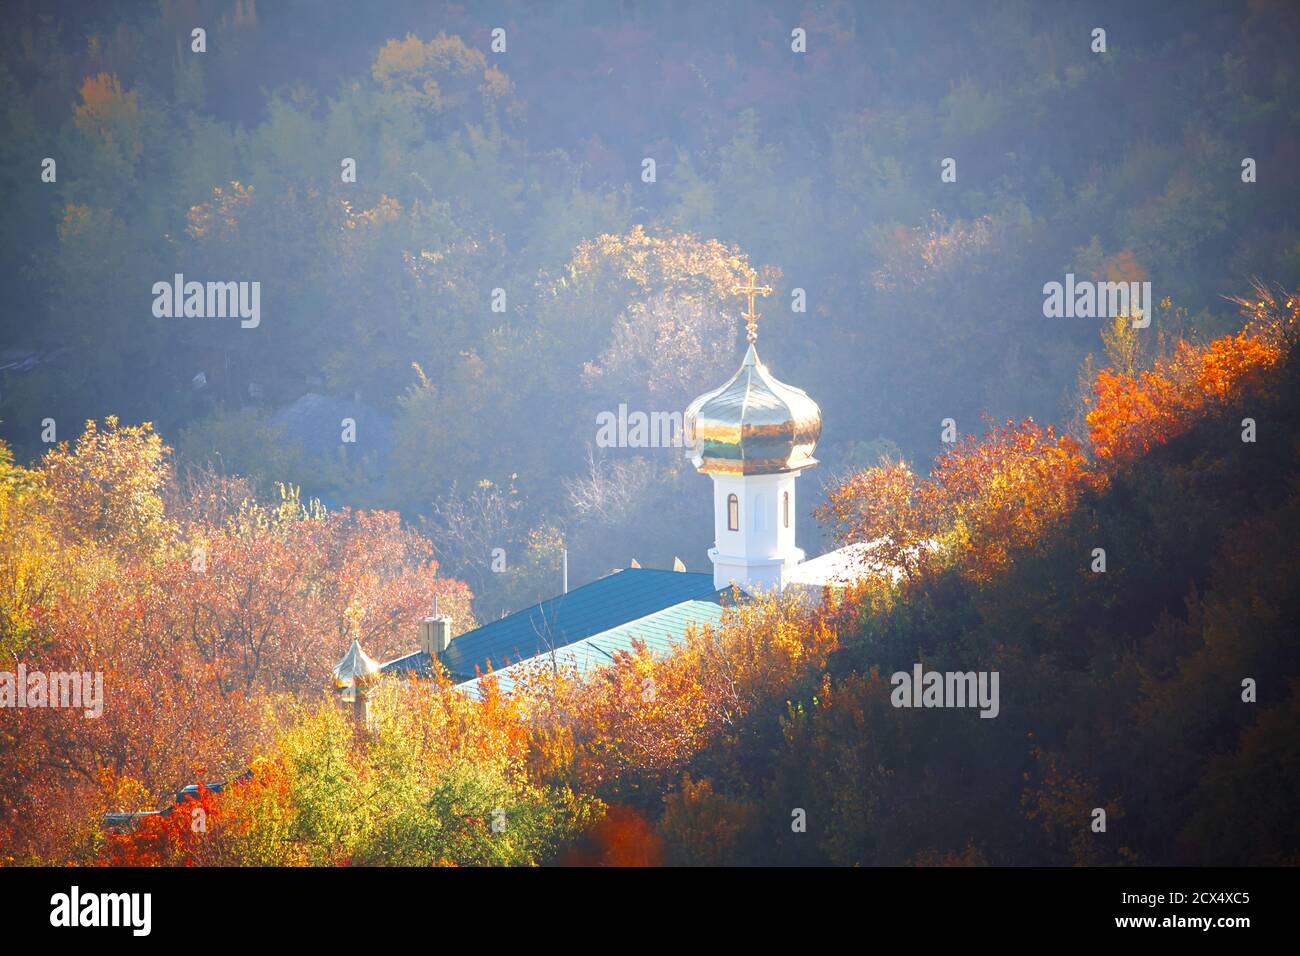 Orthodoxe Kirche mit goldener Kuppel auf der Abfahrt. Herbstlandschaft mit Kirche Stockfoto